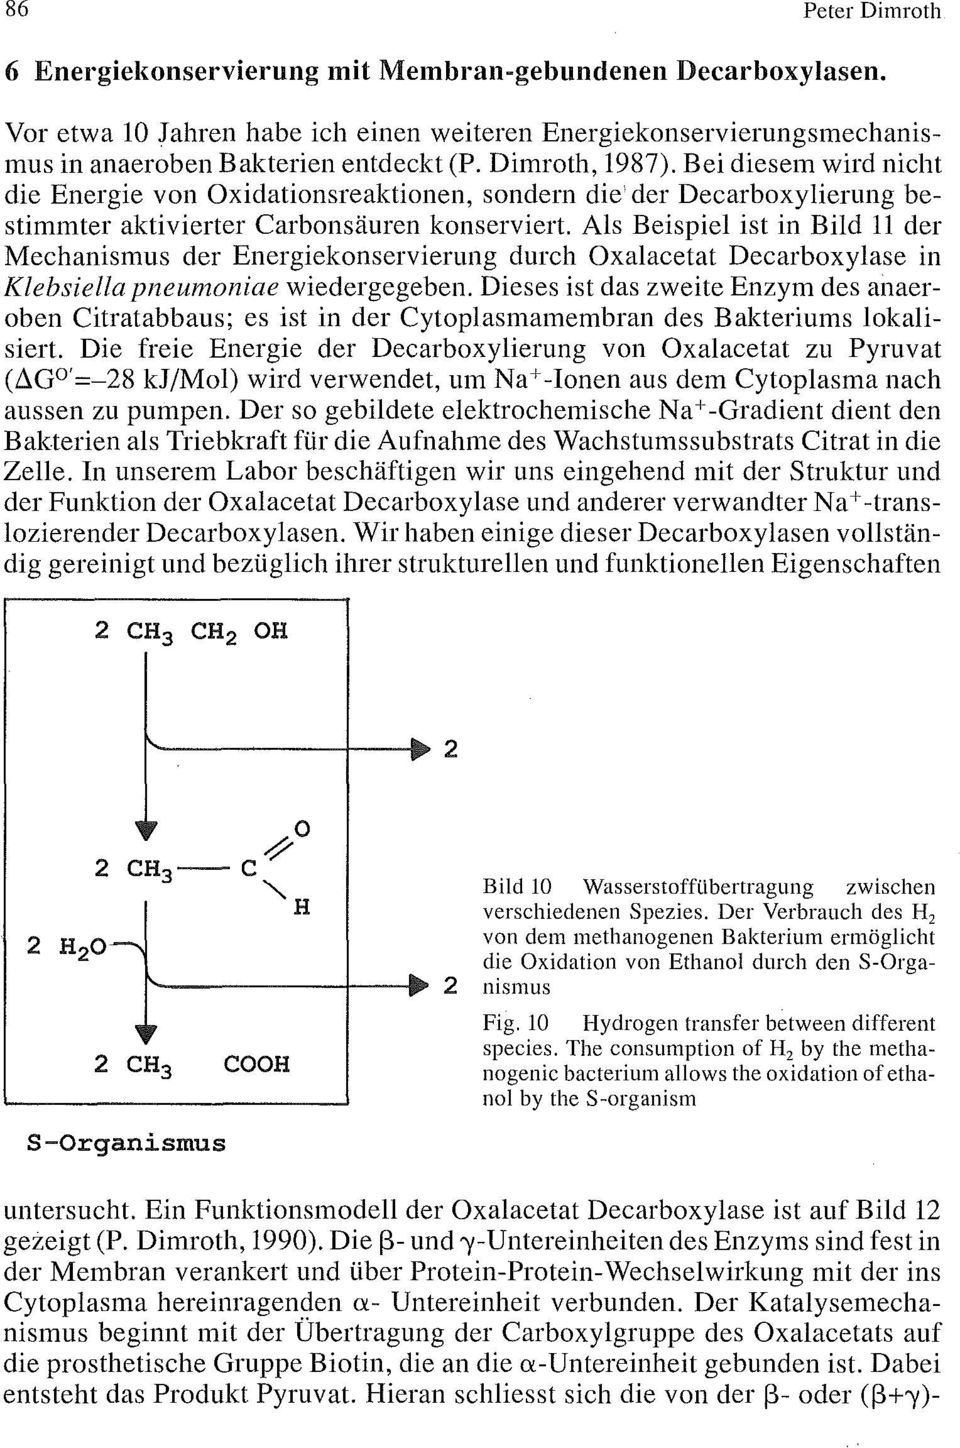 Als Beispiel ist in Bild 11 der Mechanismus der Energiekonservierung durch Oxalacetat Decarboxylase in Klebsiella pneumoniae wiedergegeben.